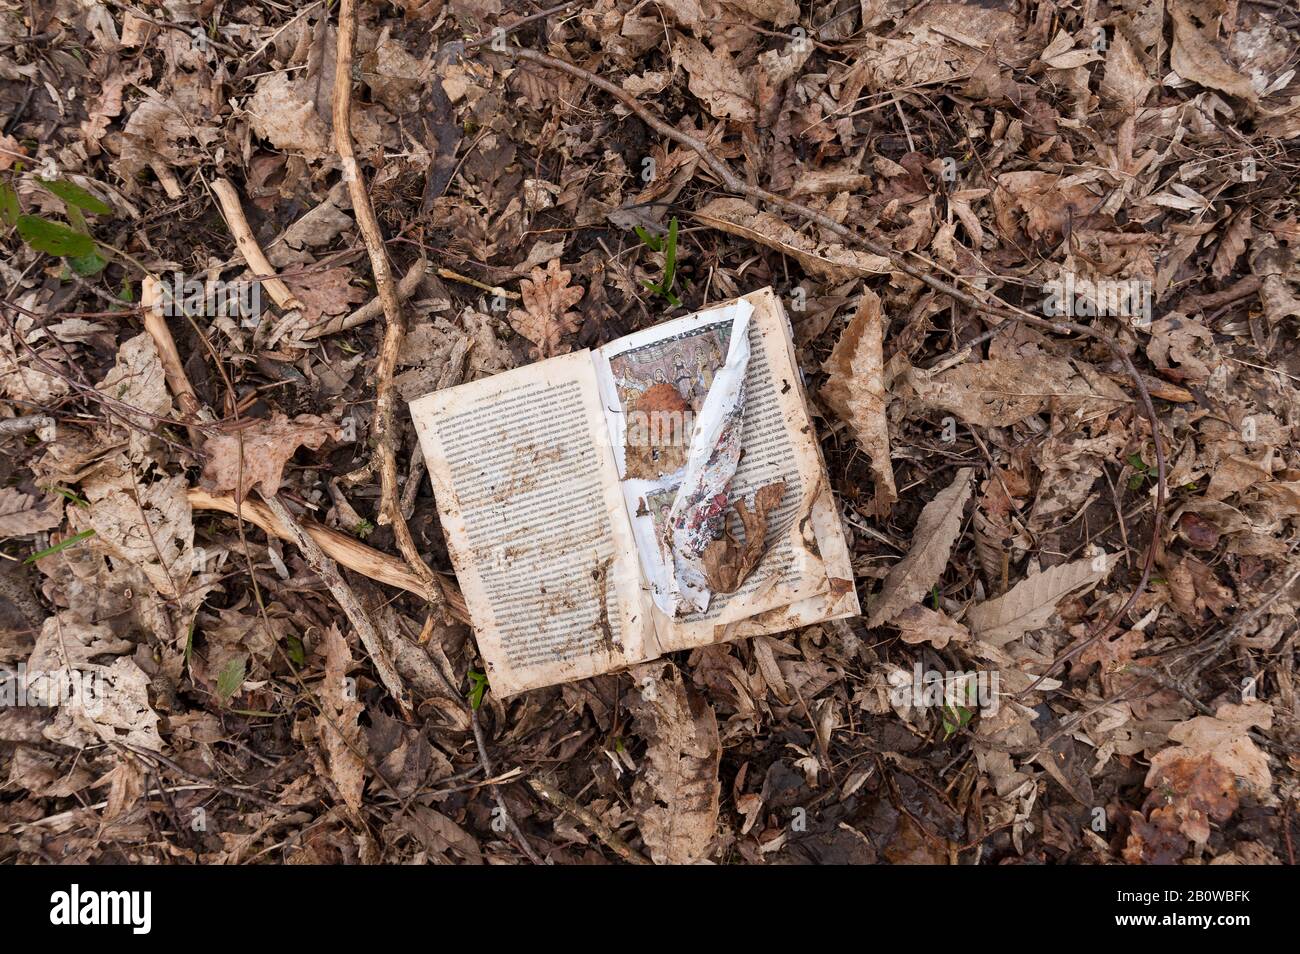 Ein Buch mit den harten Wirbelsäulen, das die jüdische Geschichte dokumentiert, die auf dem Waldboden verworfen wurde und feucht von Unwettern und Recycling zurück in die Umwelt schürte Stockfoto